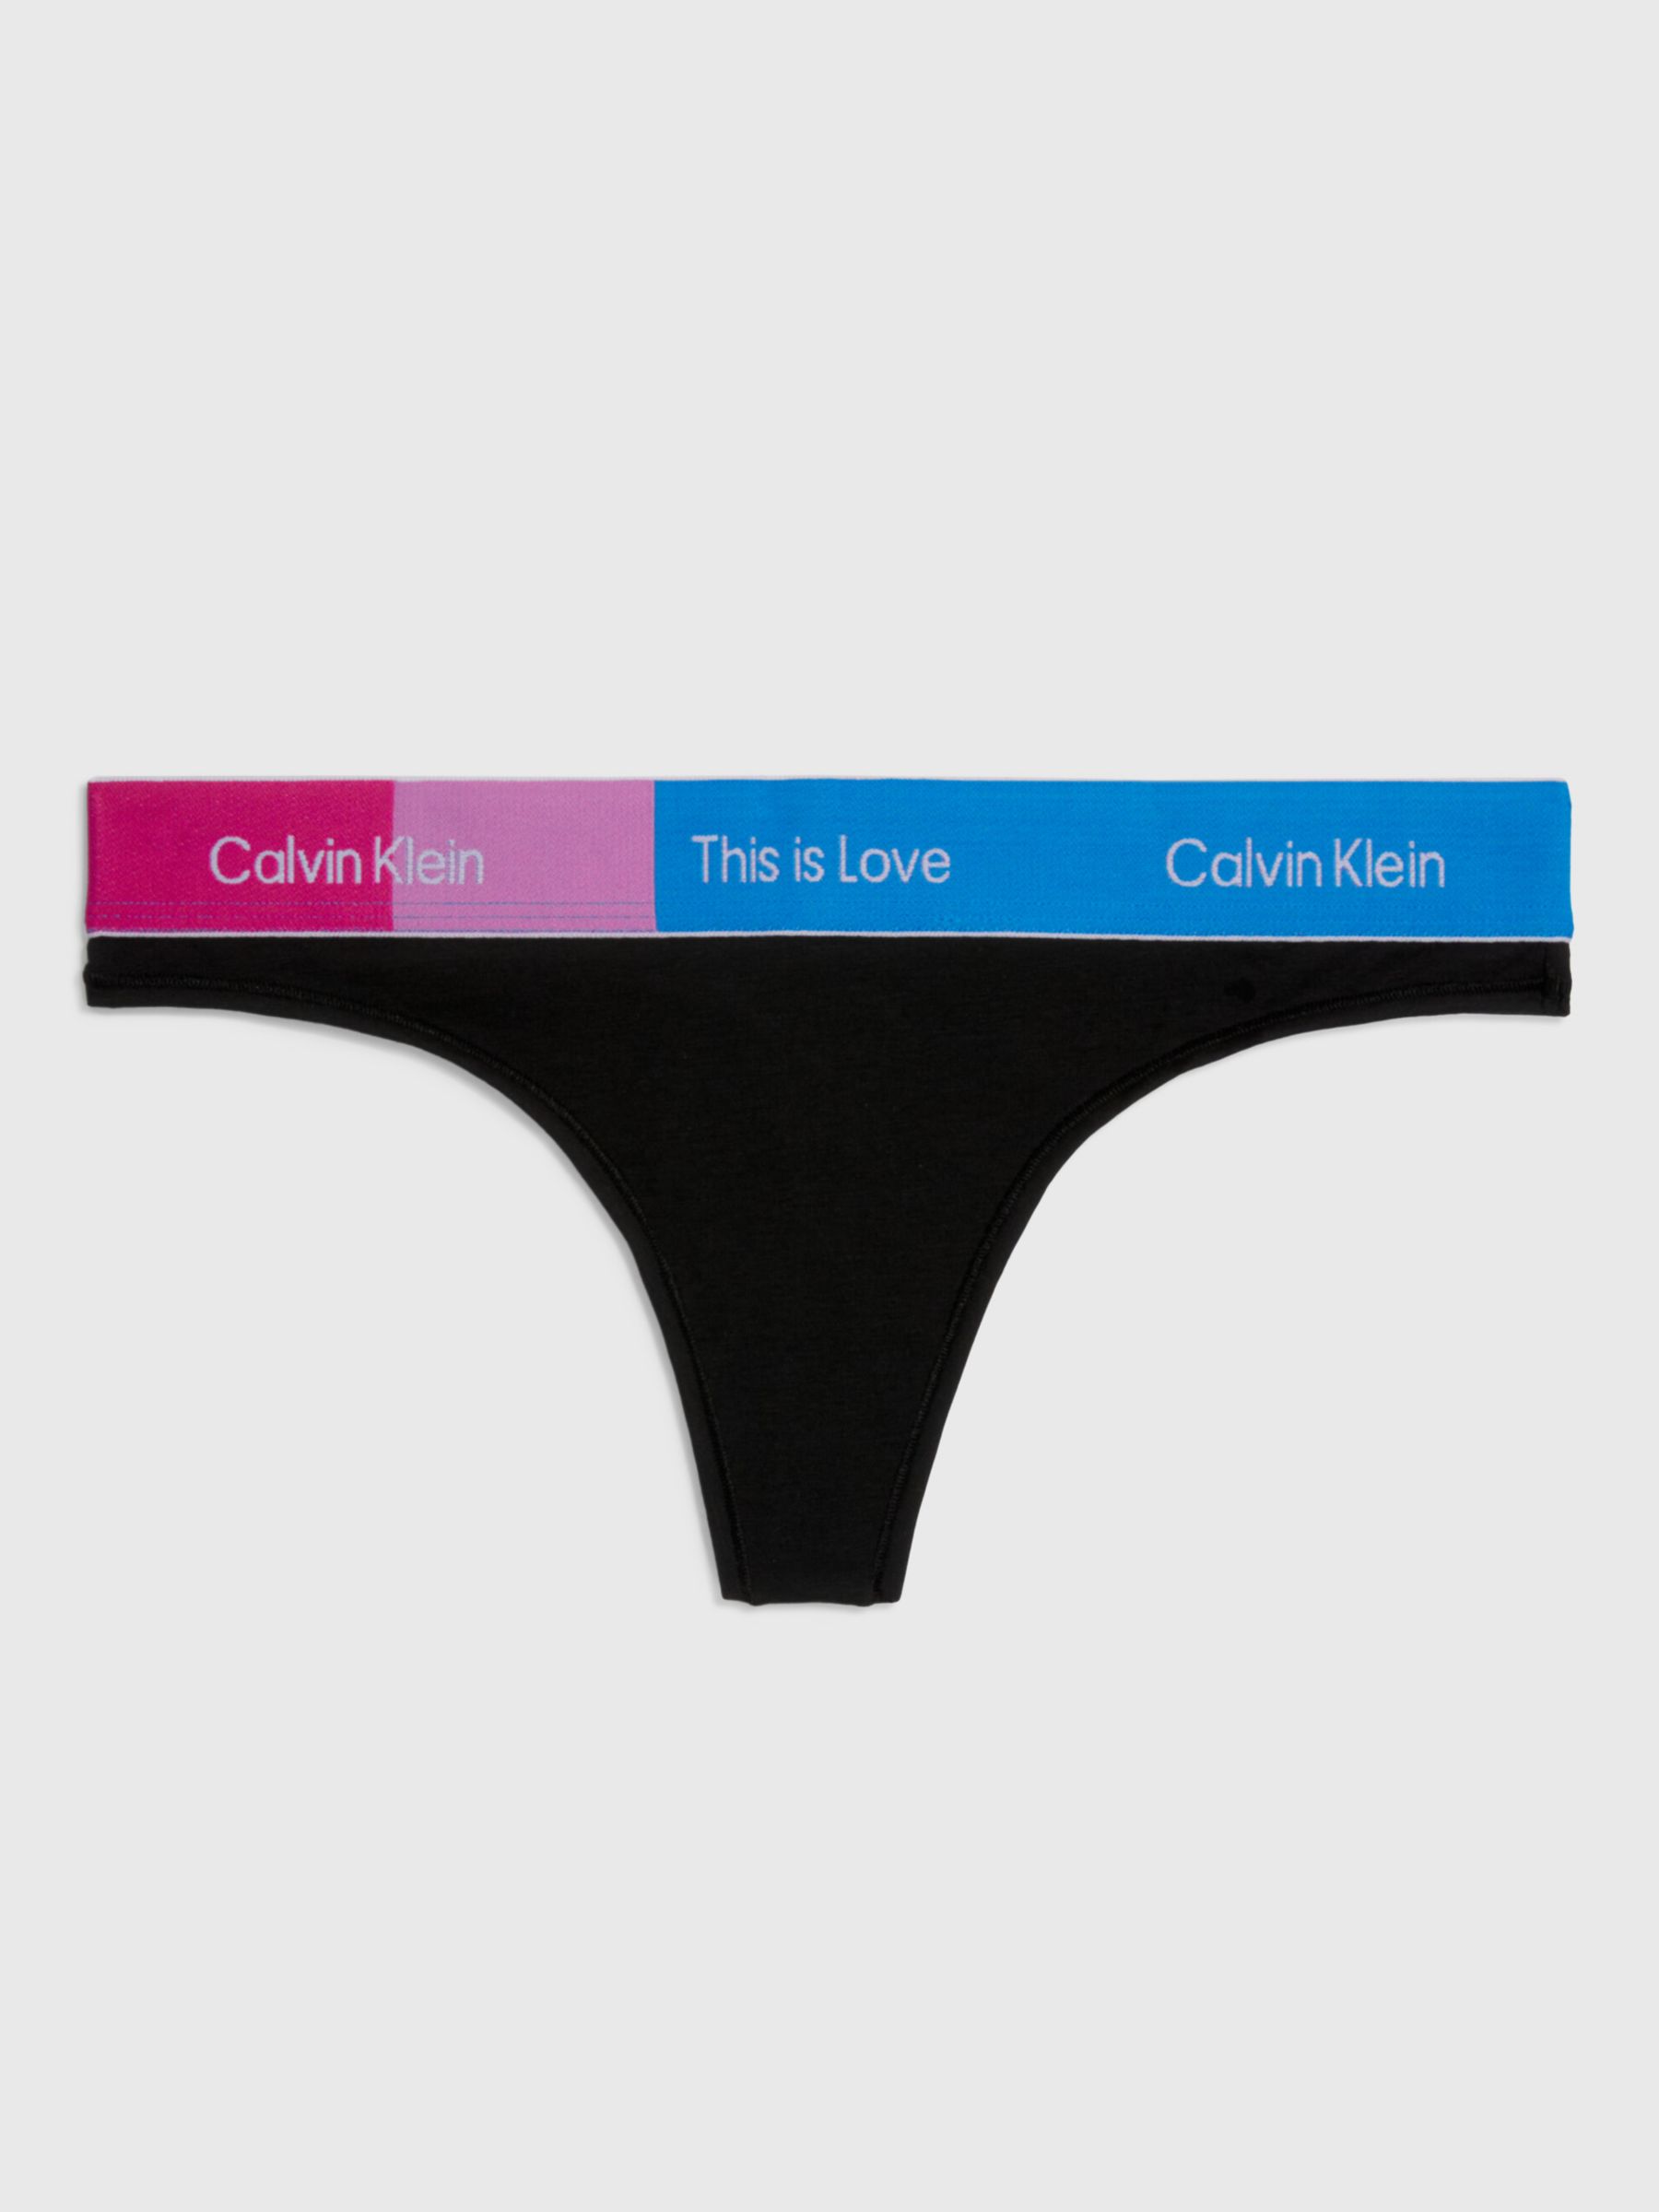 Calvin Klein Women's Pride Modern Cotton Bikini Panty, White